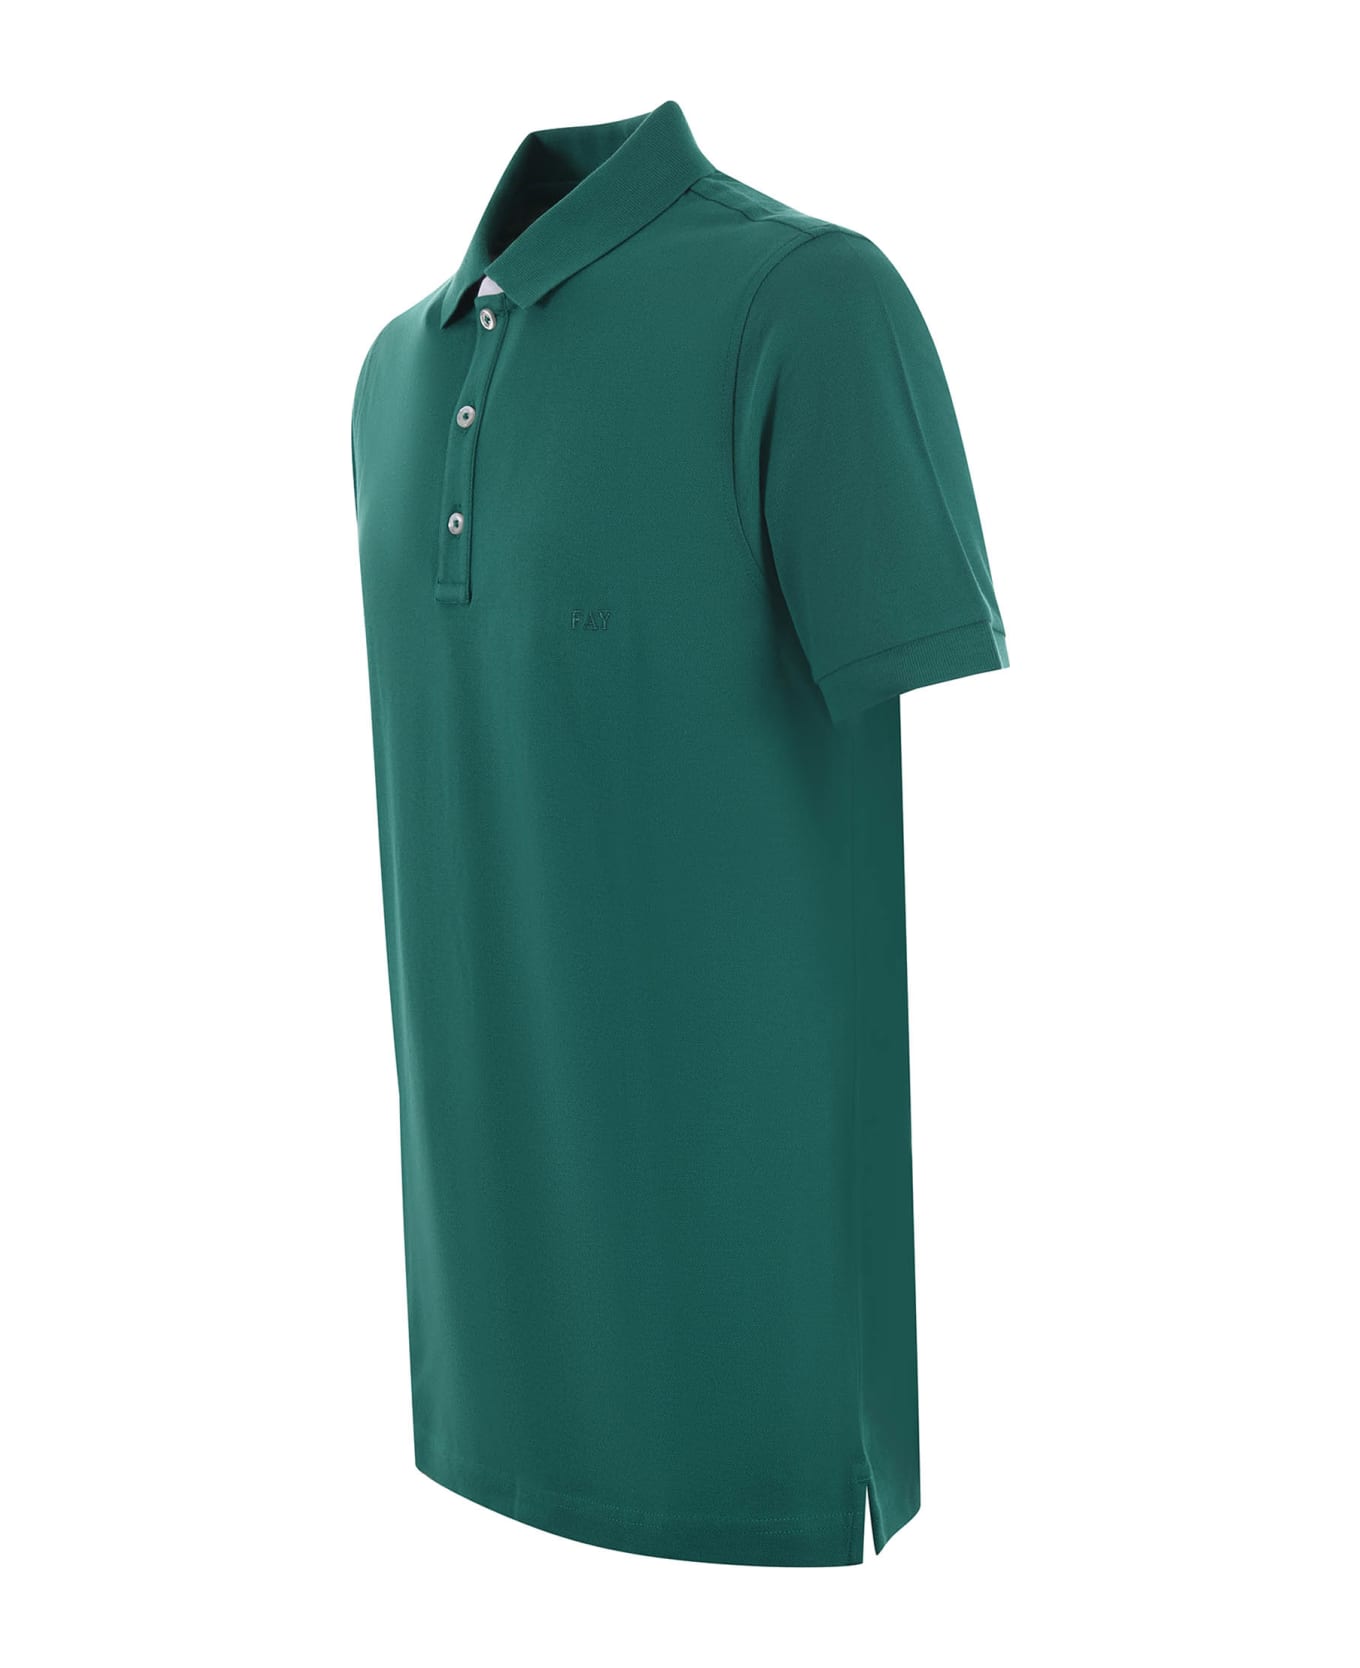 Fay Piquet Polo Shirt - Green